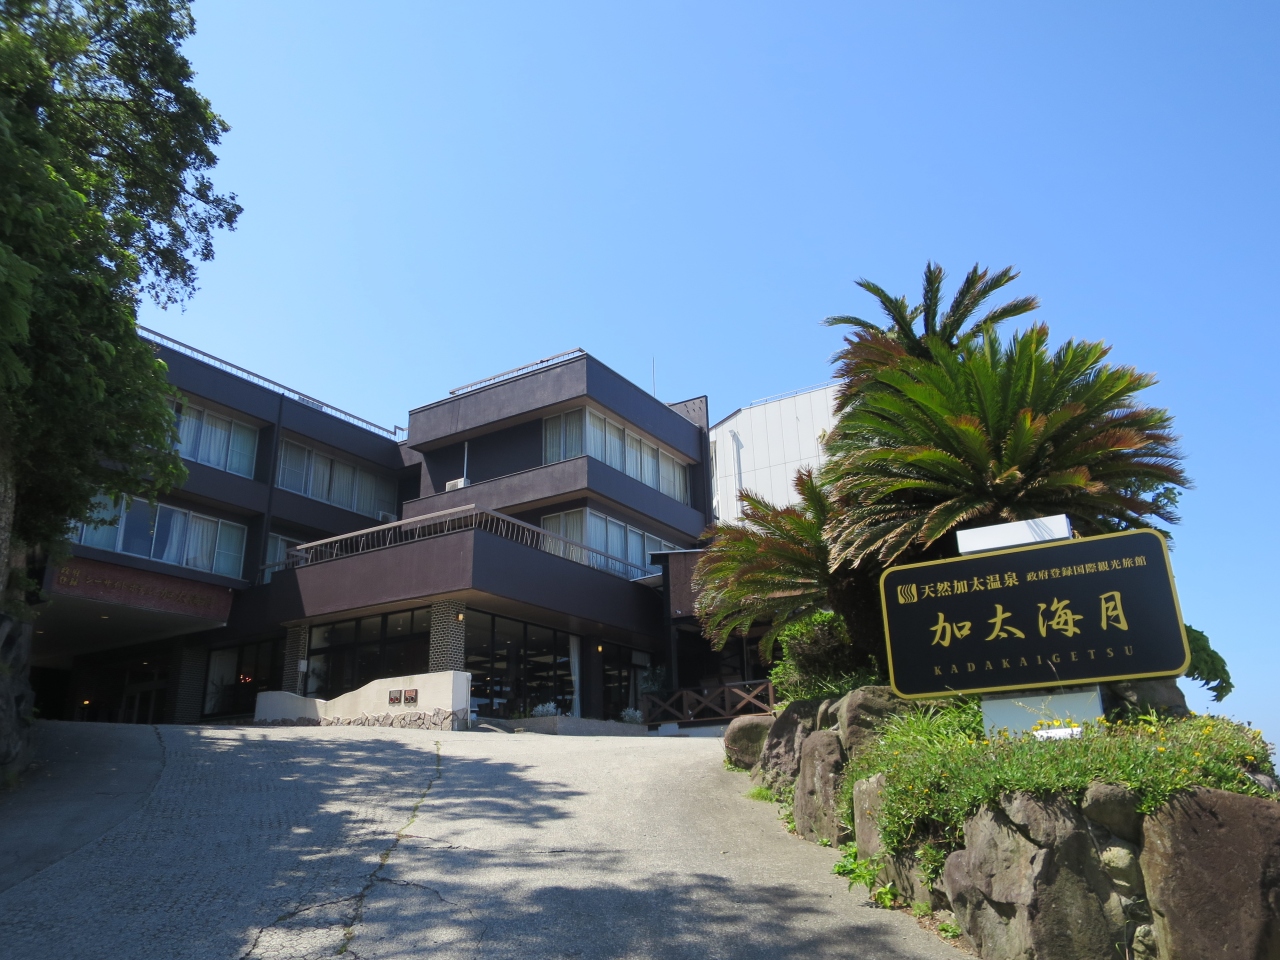 18 6 和歌山 シーサイドホテル 加太海月 加太 和歌山県 の旅行記 ブログ By Banさん フォートラベル